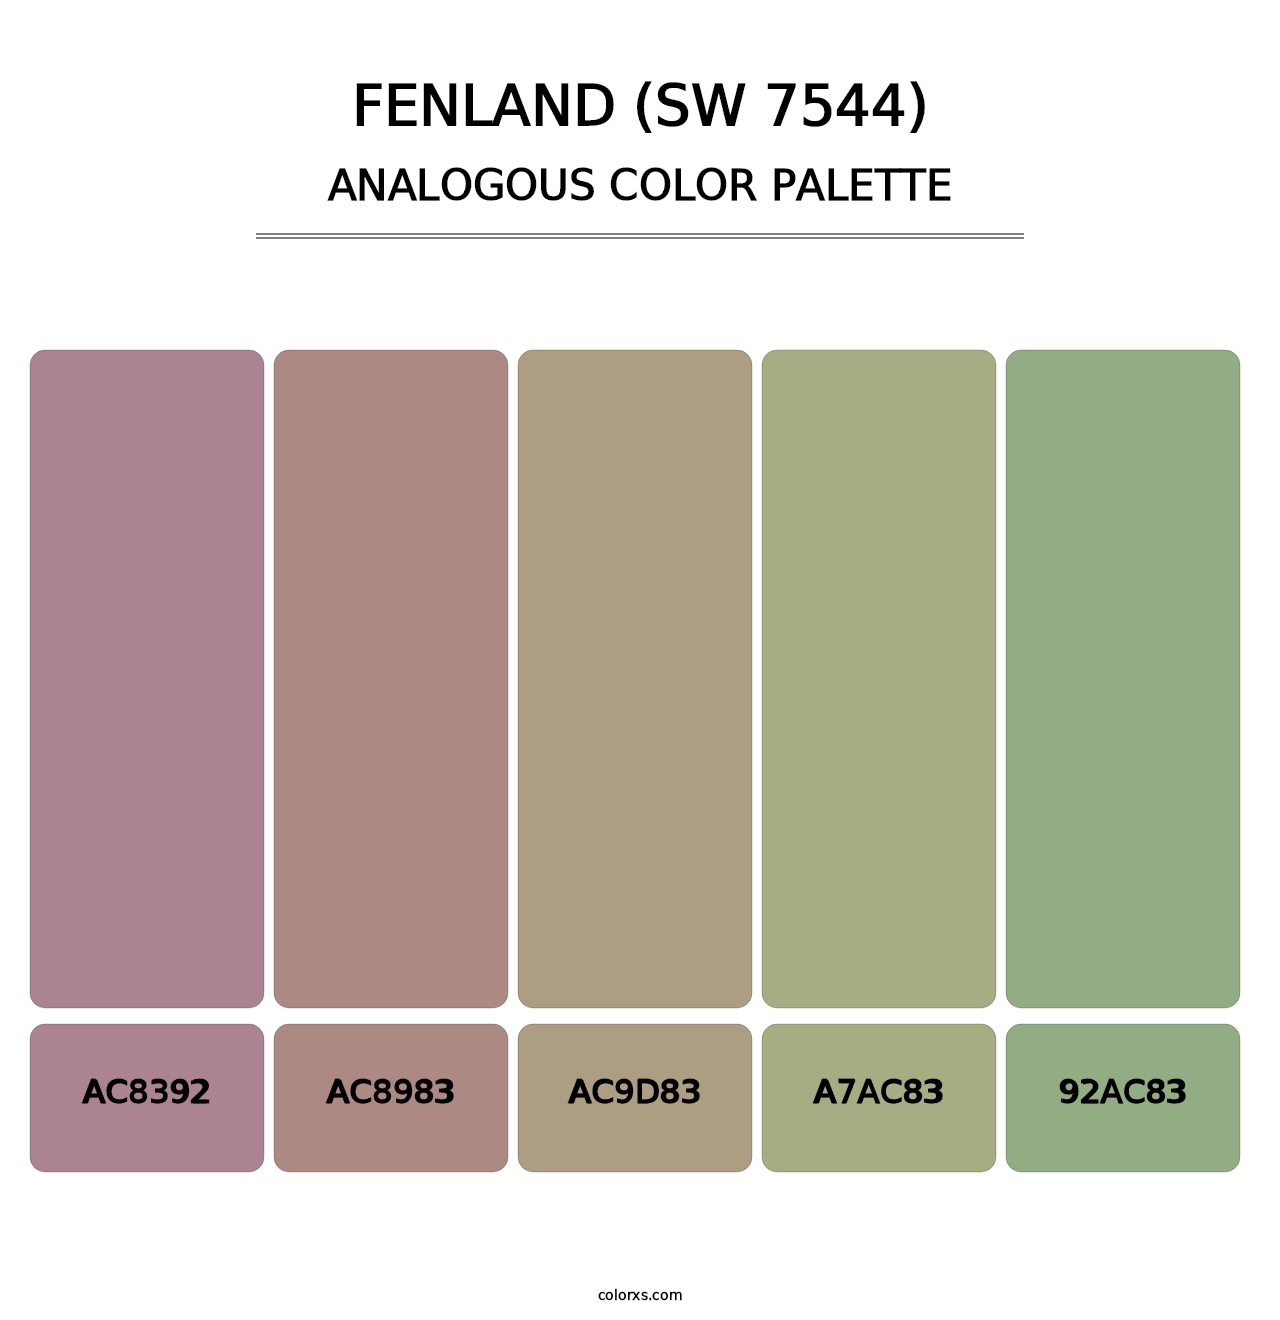 Fenland (SW 7544) - Analogous Color Palette